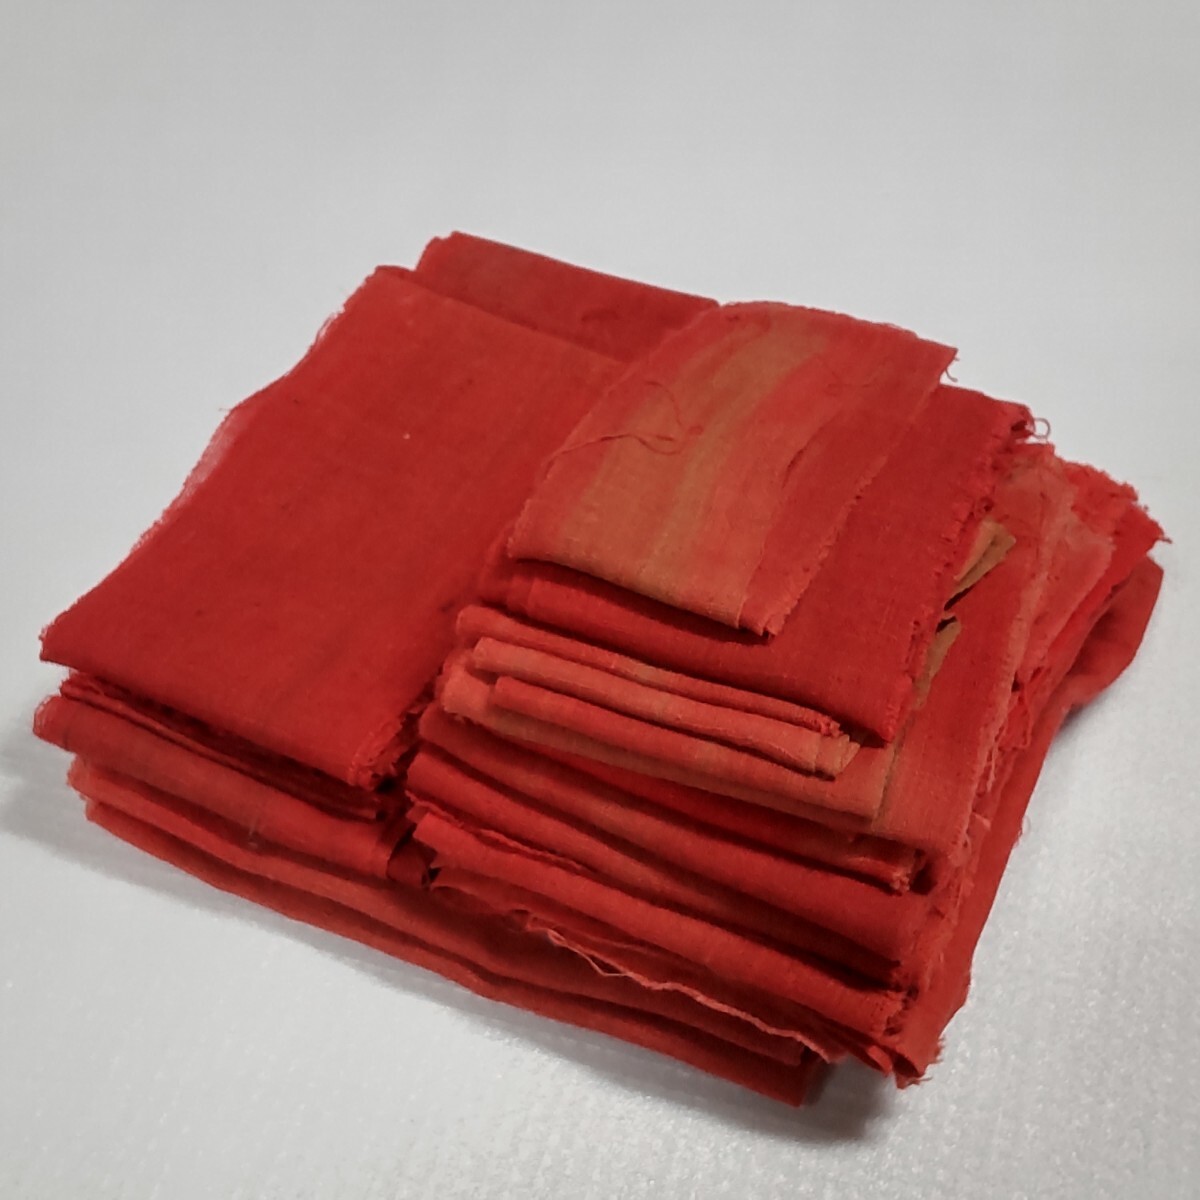 【時代布】紅花 木綿 端切れ はぎれ 破片 チップ 約200g 生地 古布 古裂 アンティーク リメイク素材 A-696_画像1